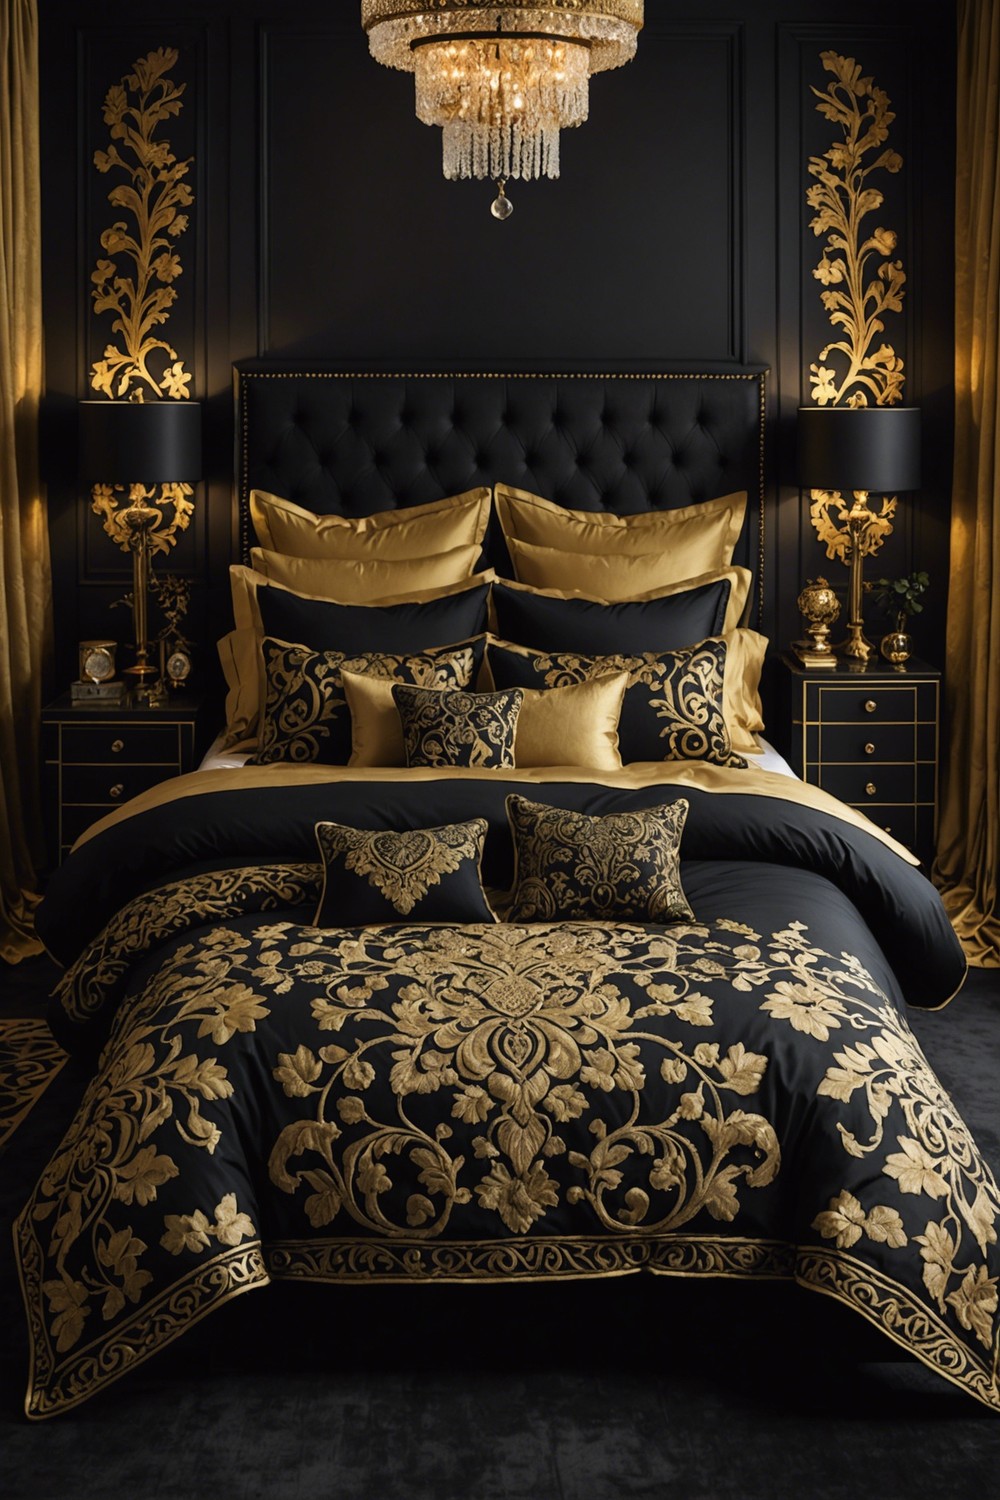 Elegant Black and Gold Patterned Bedding